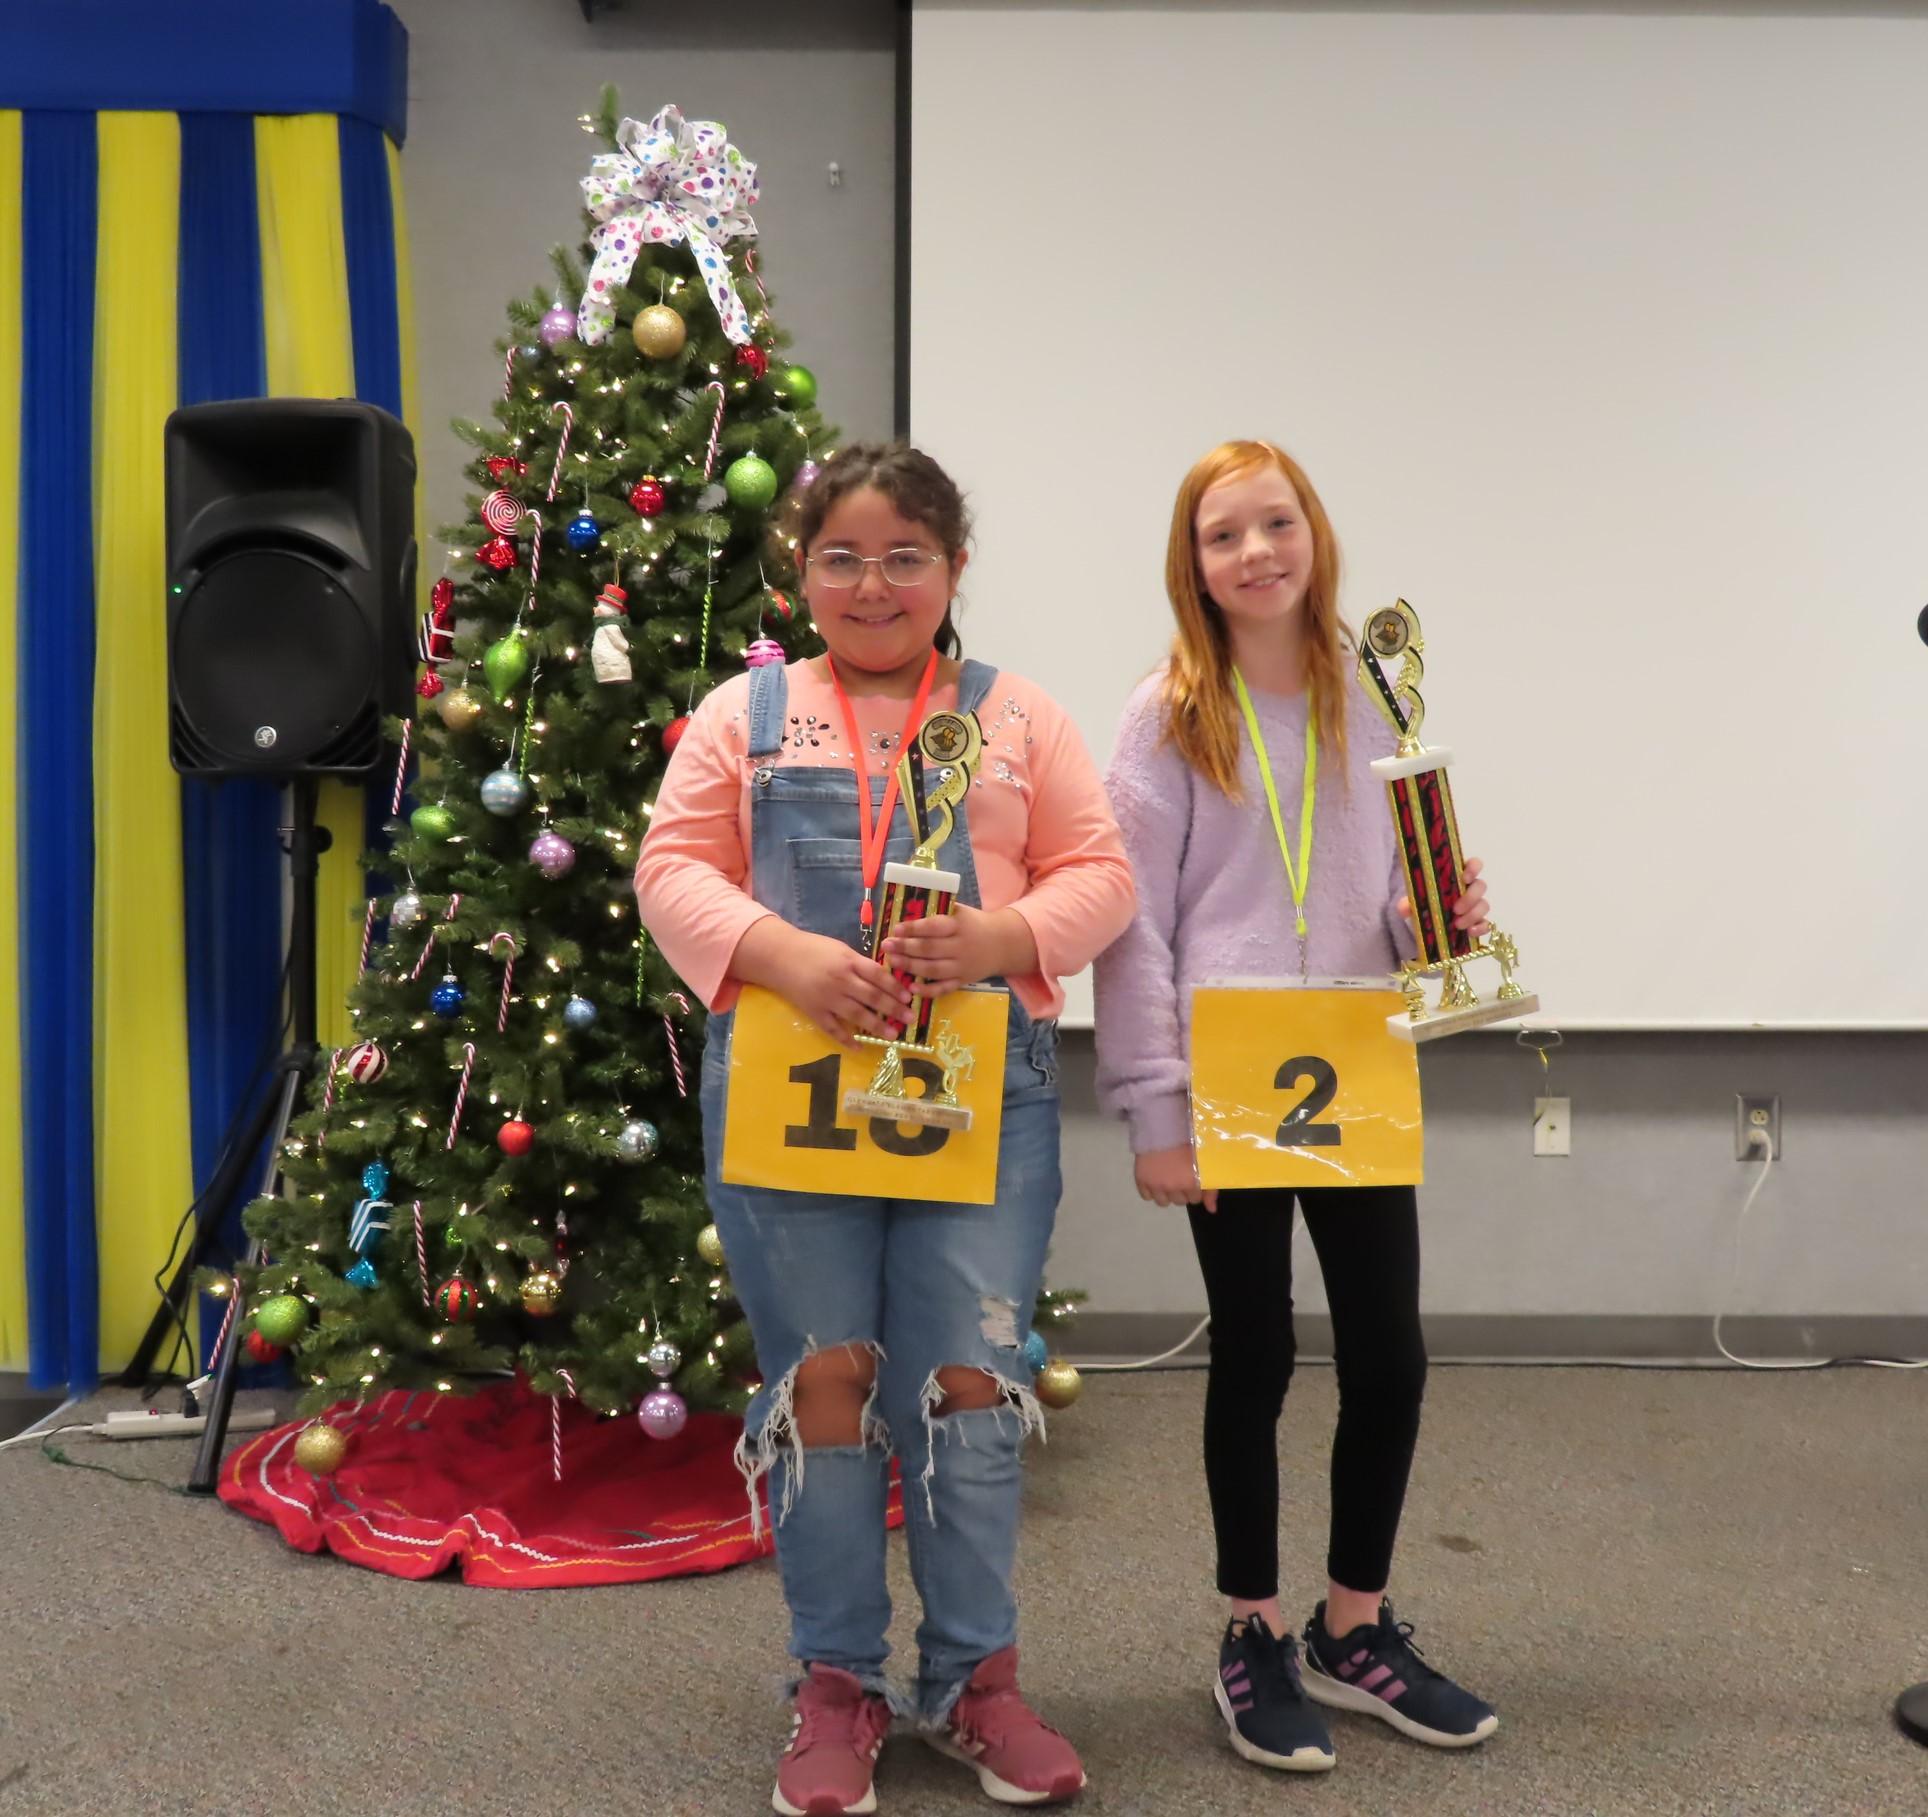 Spelling Bee Winners